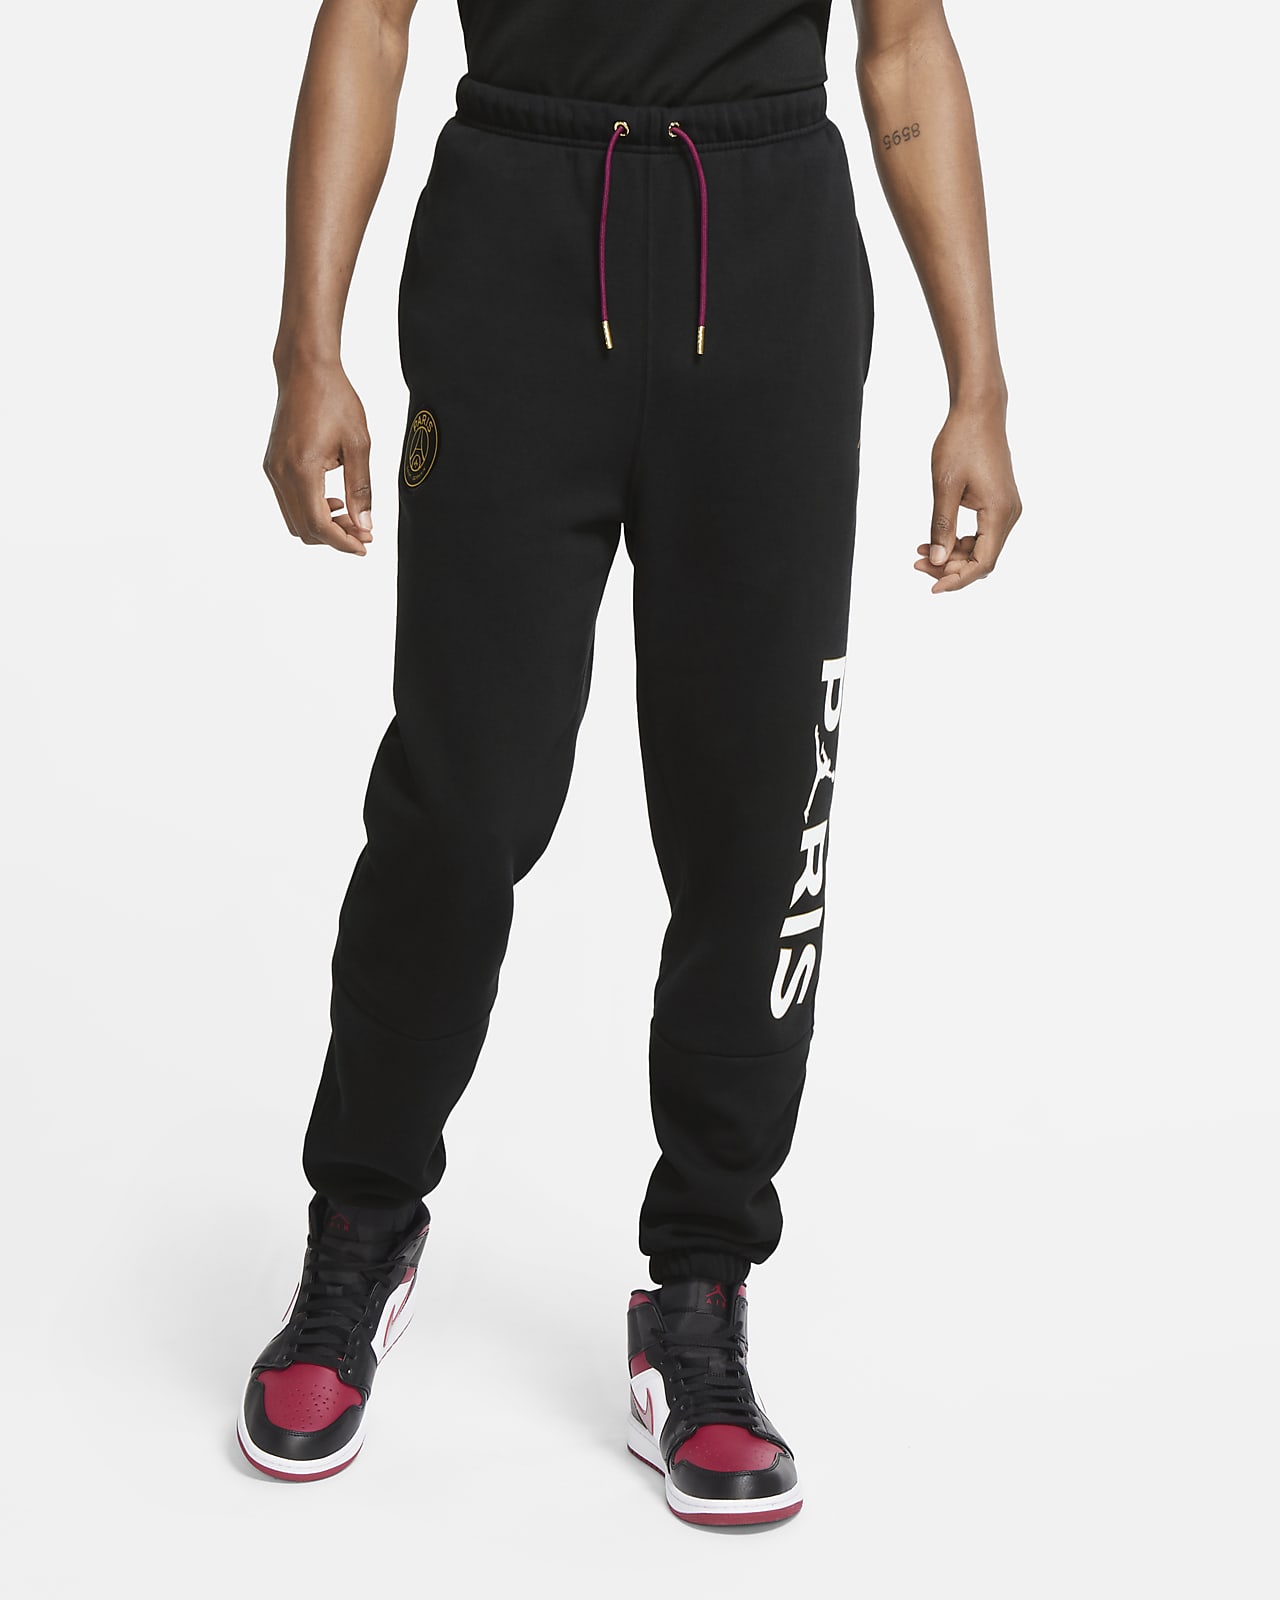 Nike公式 パリ サンジェルマン メンズパンツ オンラインストア 通販サイト